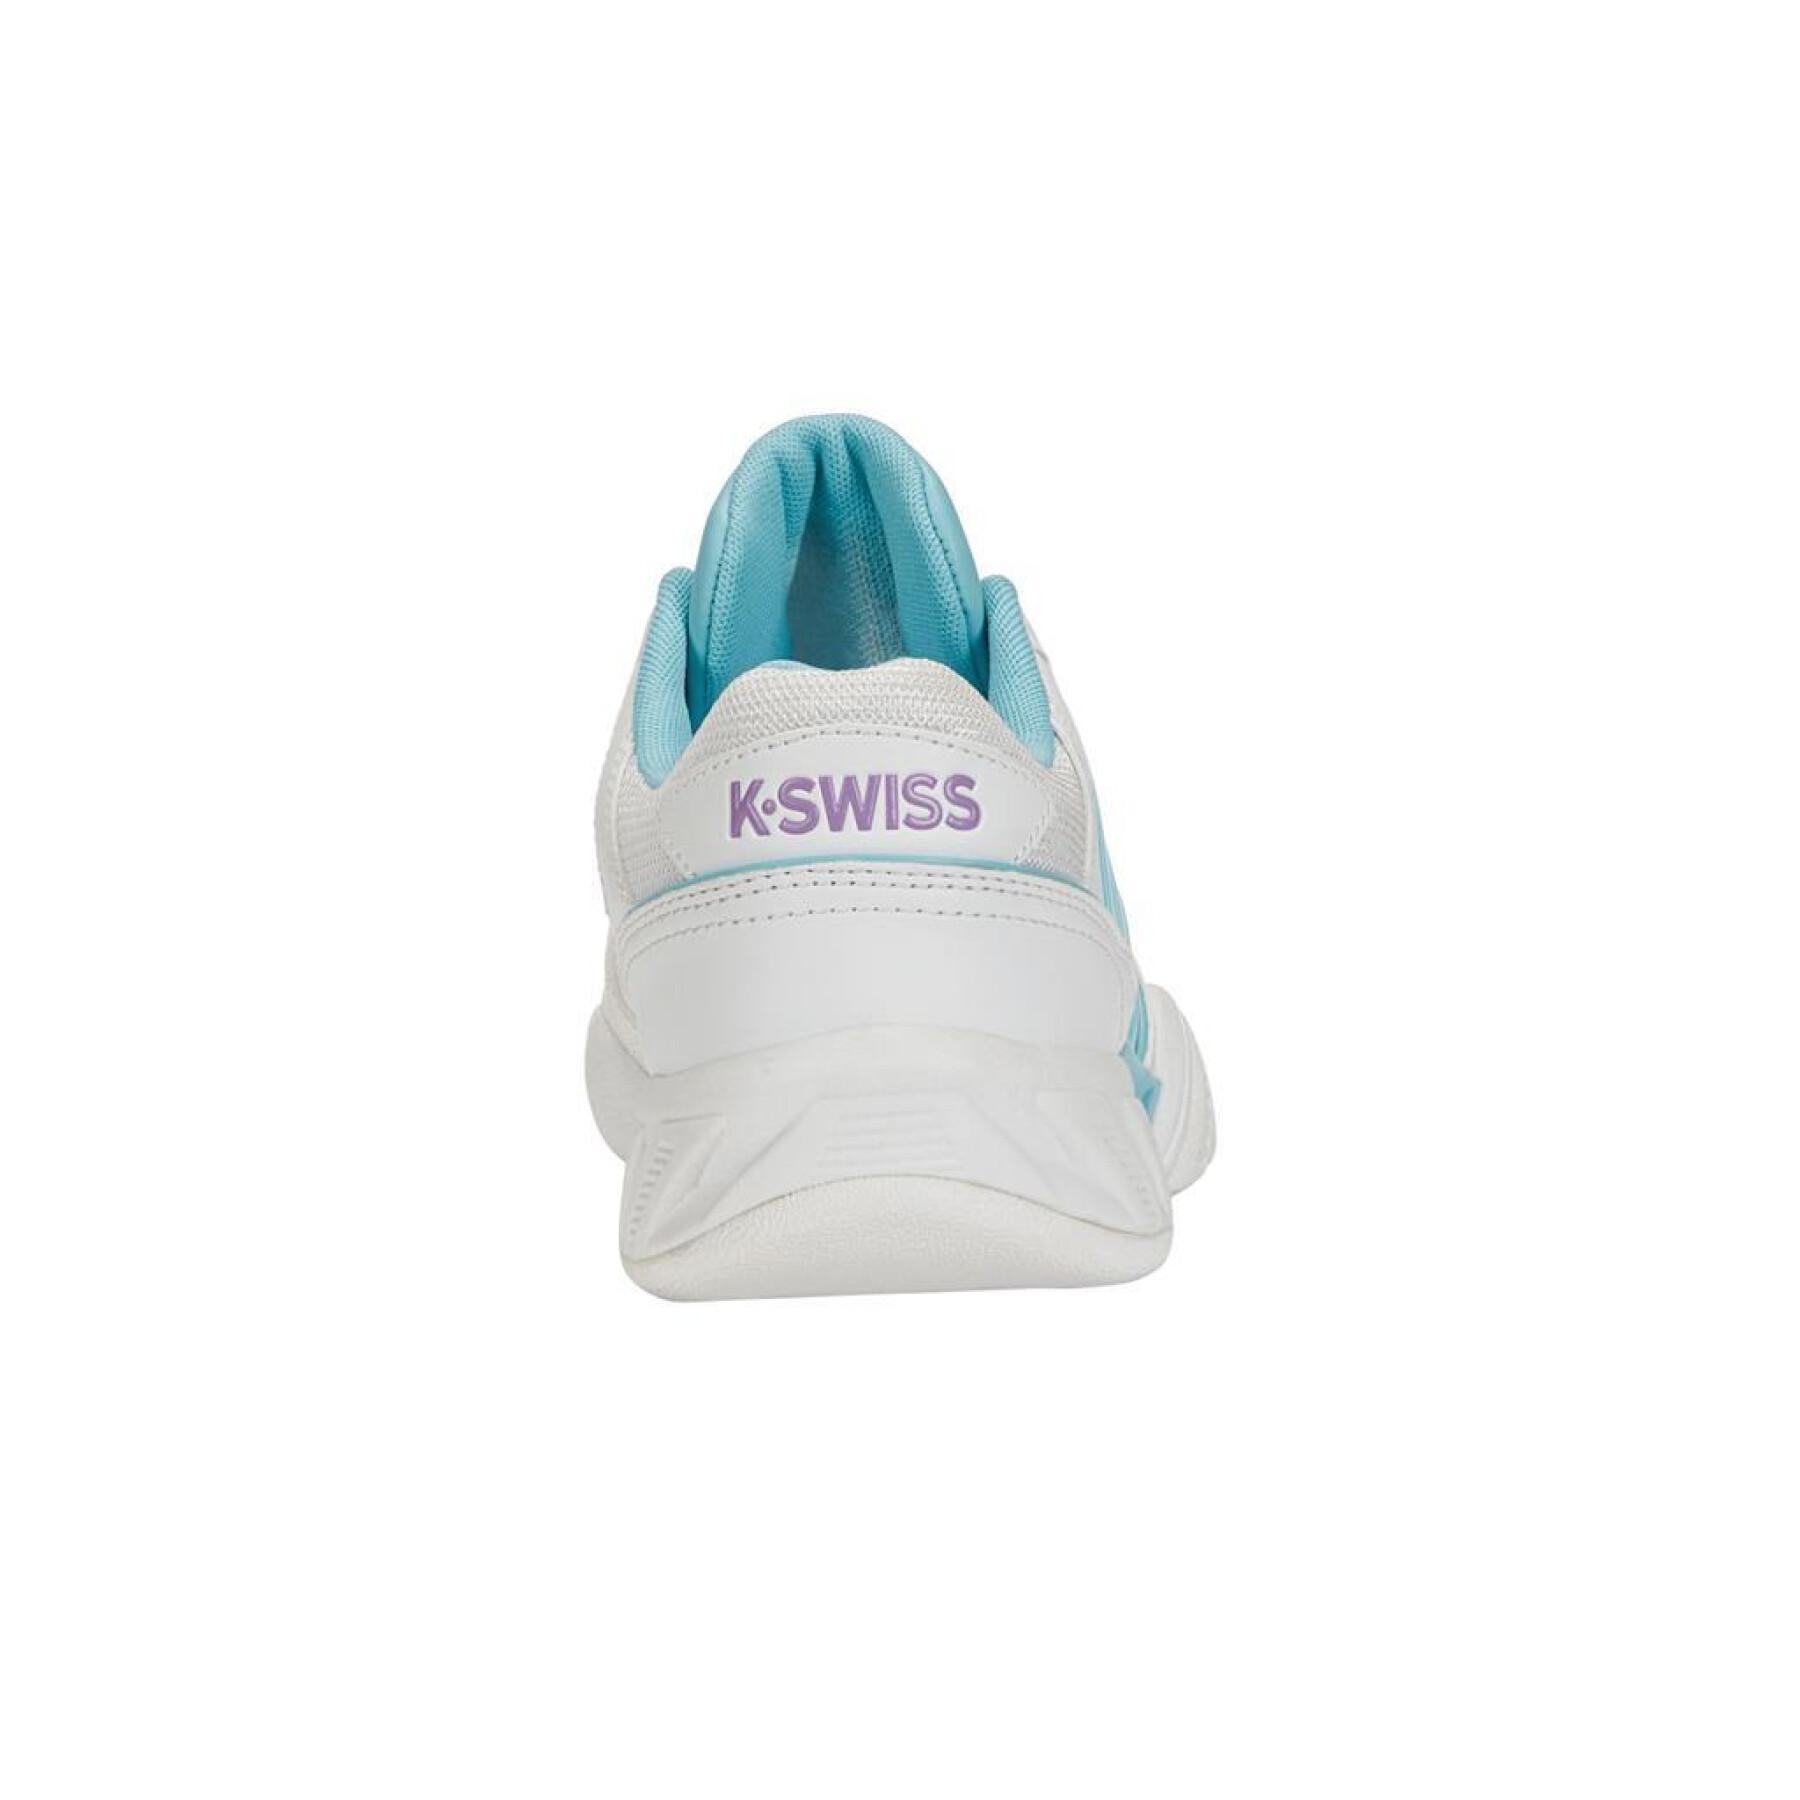 Women's tennis shoes K-Swiss Bigshot Light 4 Carpet